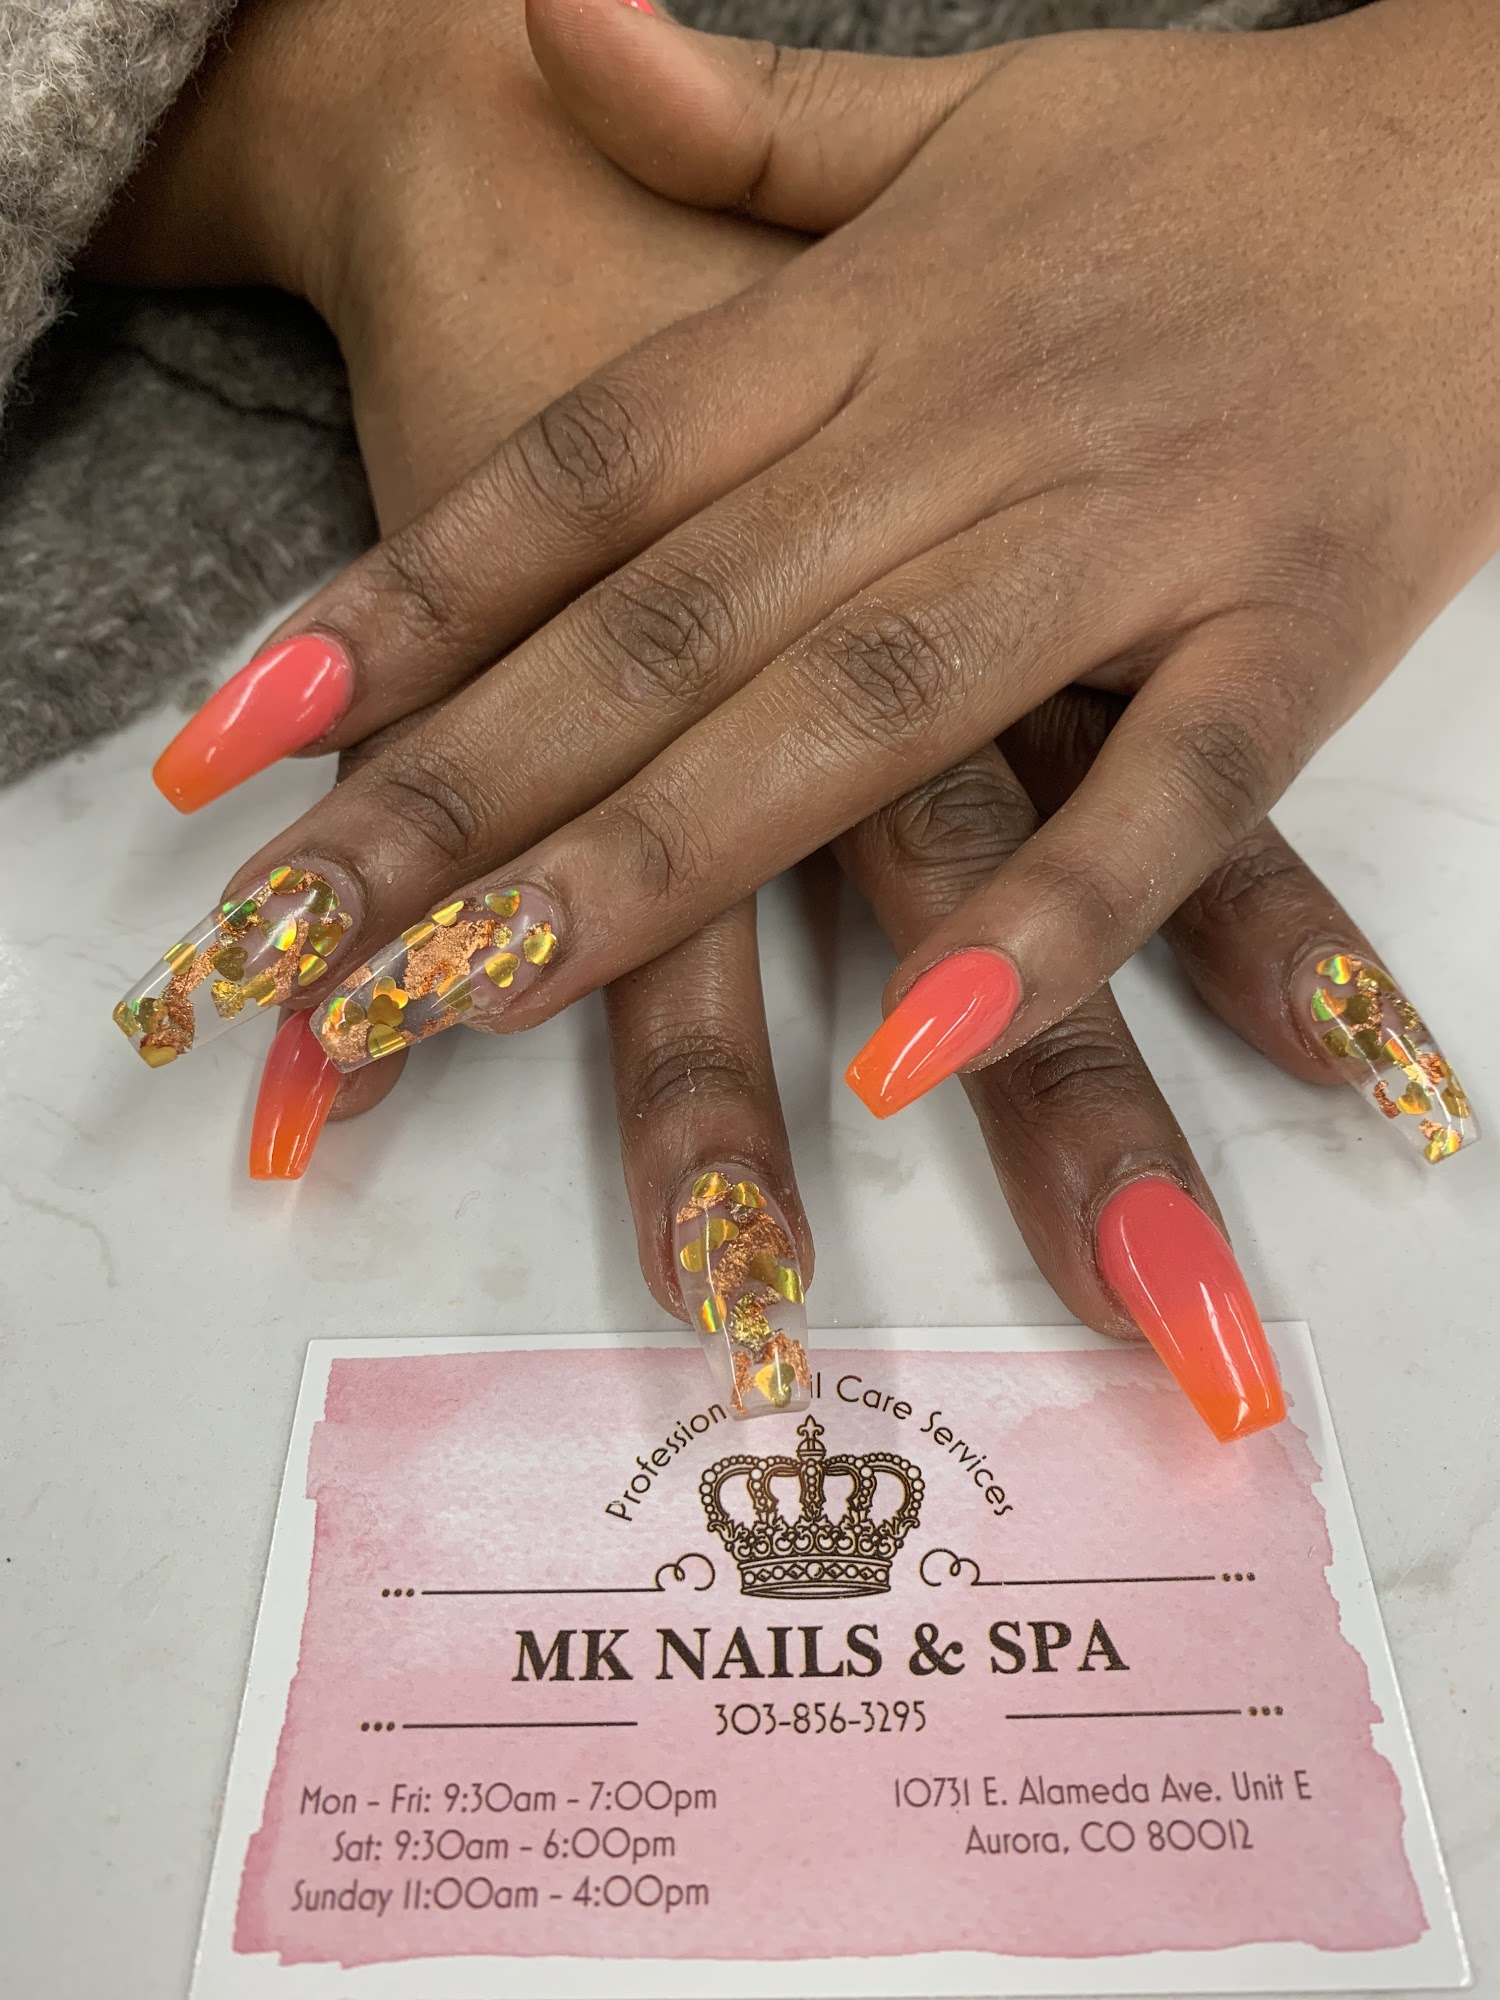 MK nails & spa